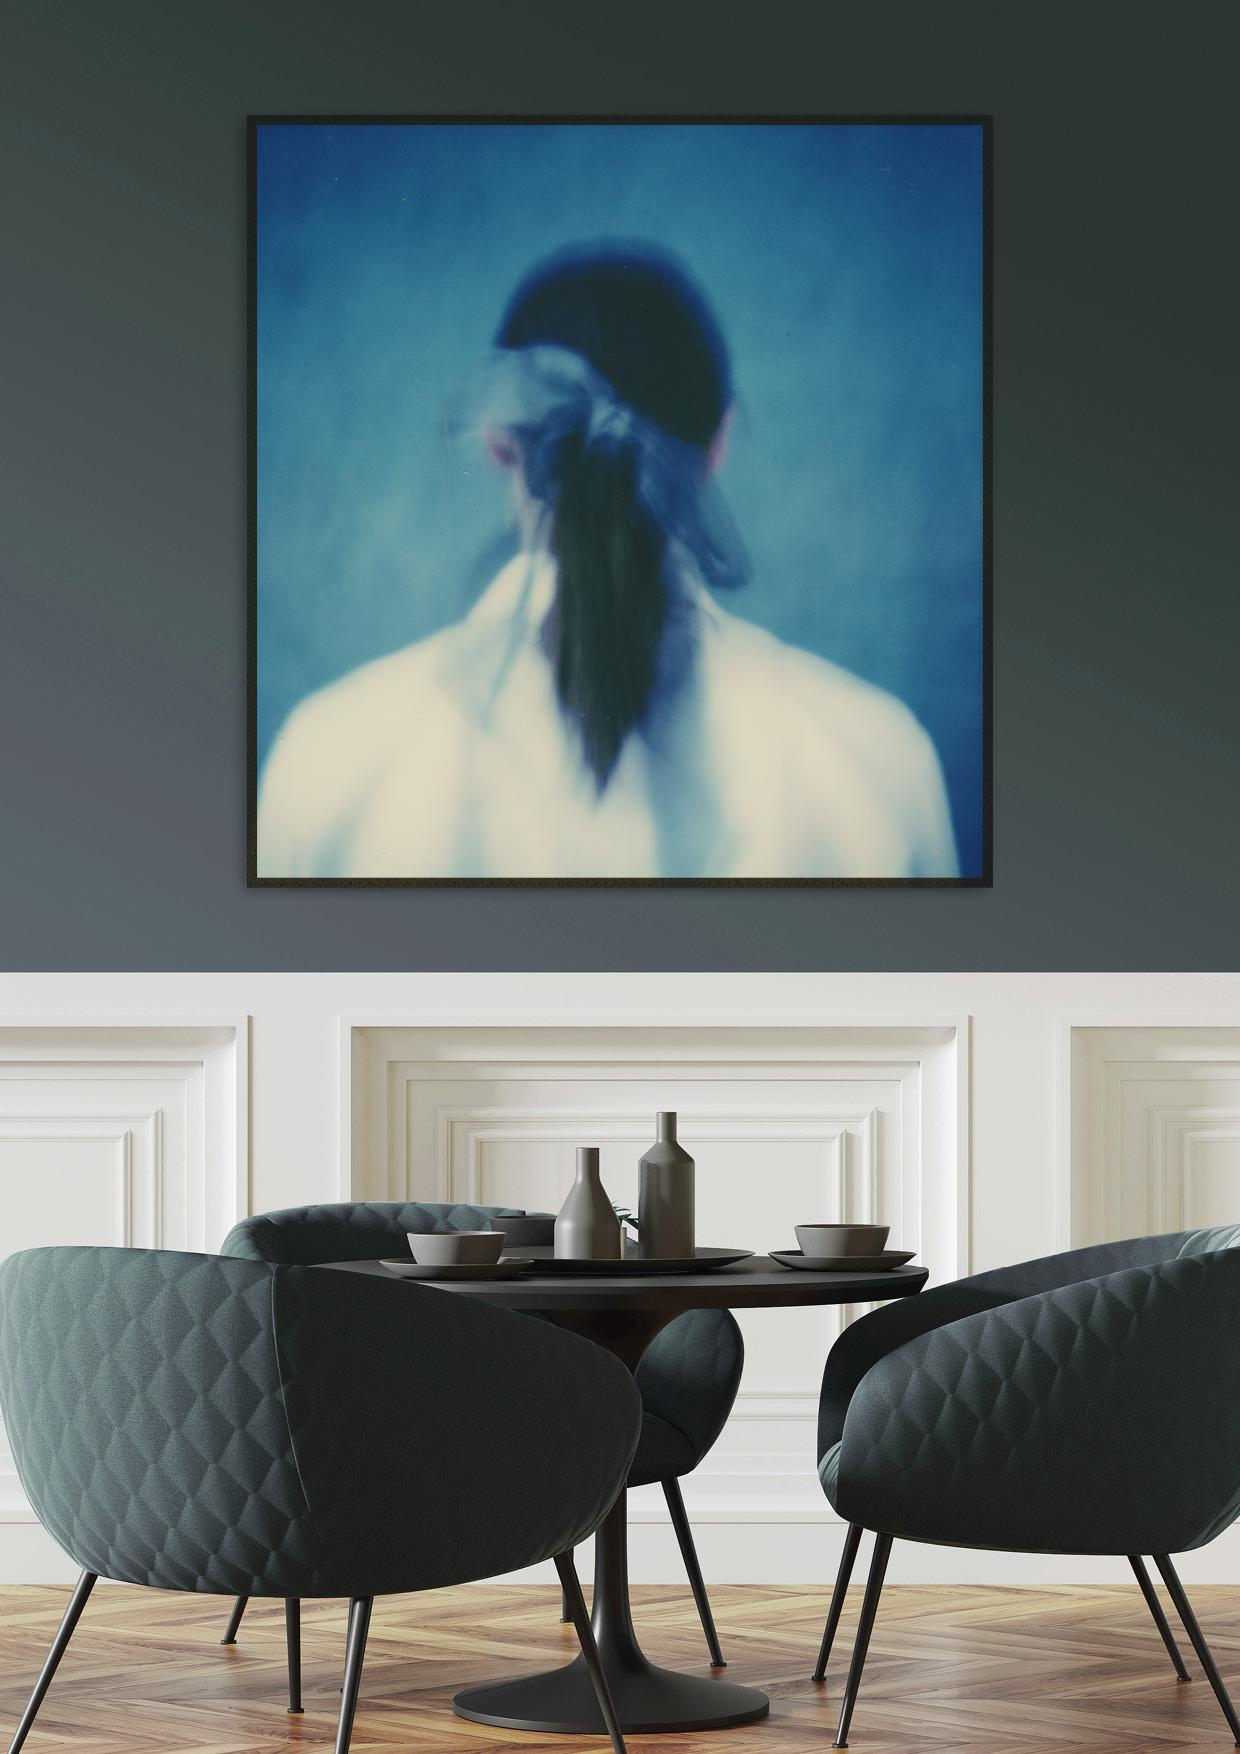 Ribbon bleu - Impression photographique de film encadrée d'un portrait de style cyanotype - Photograph de Pia Clodi